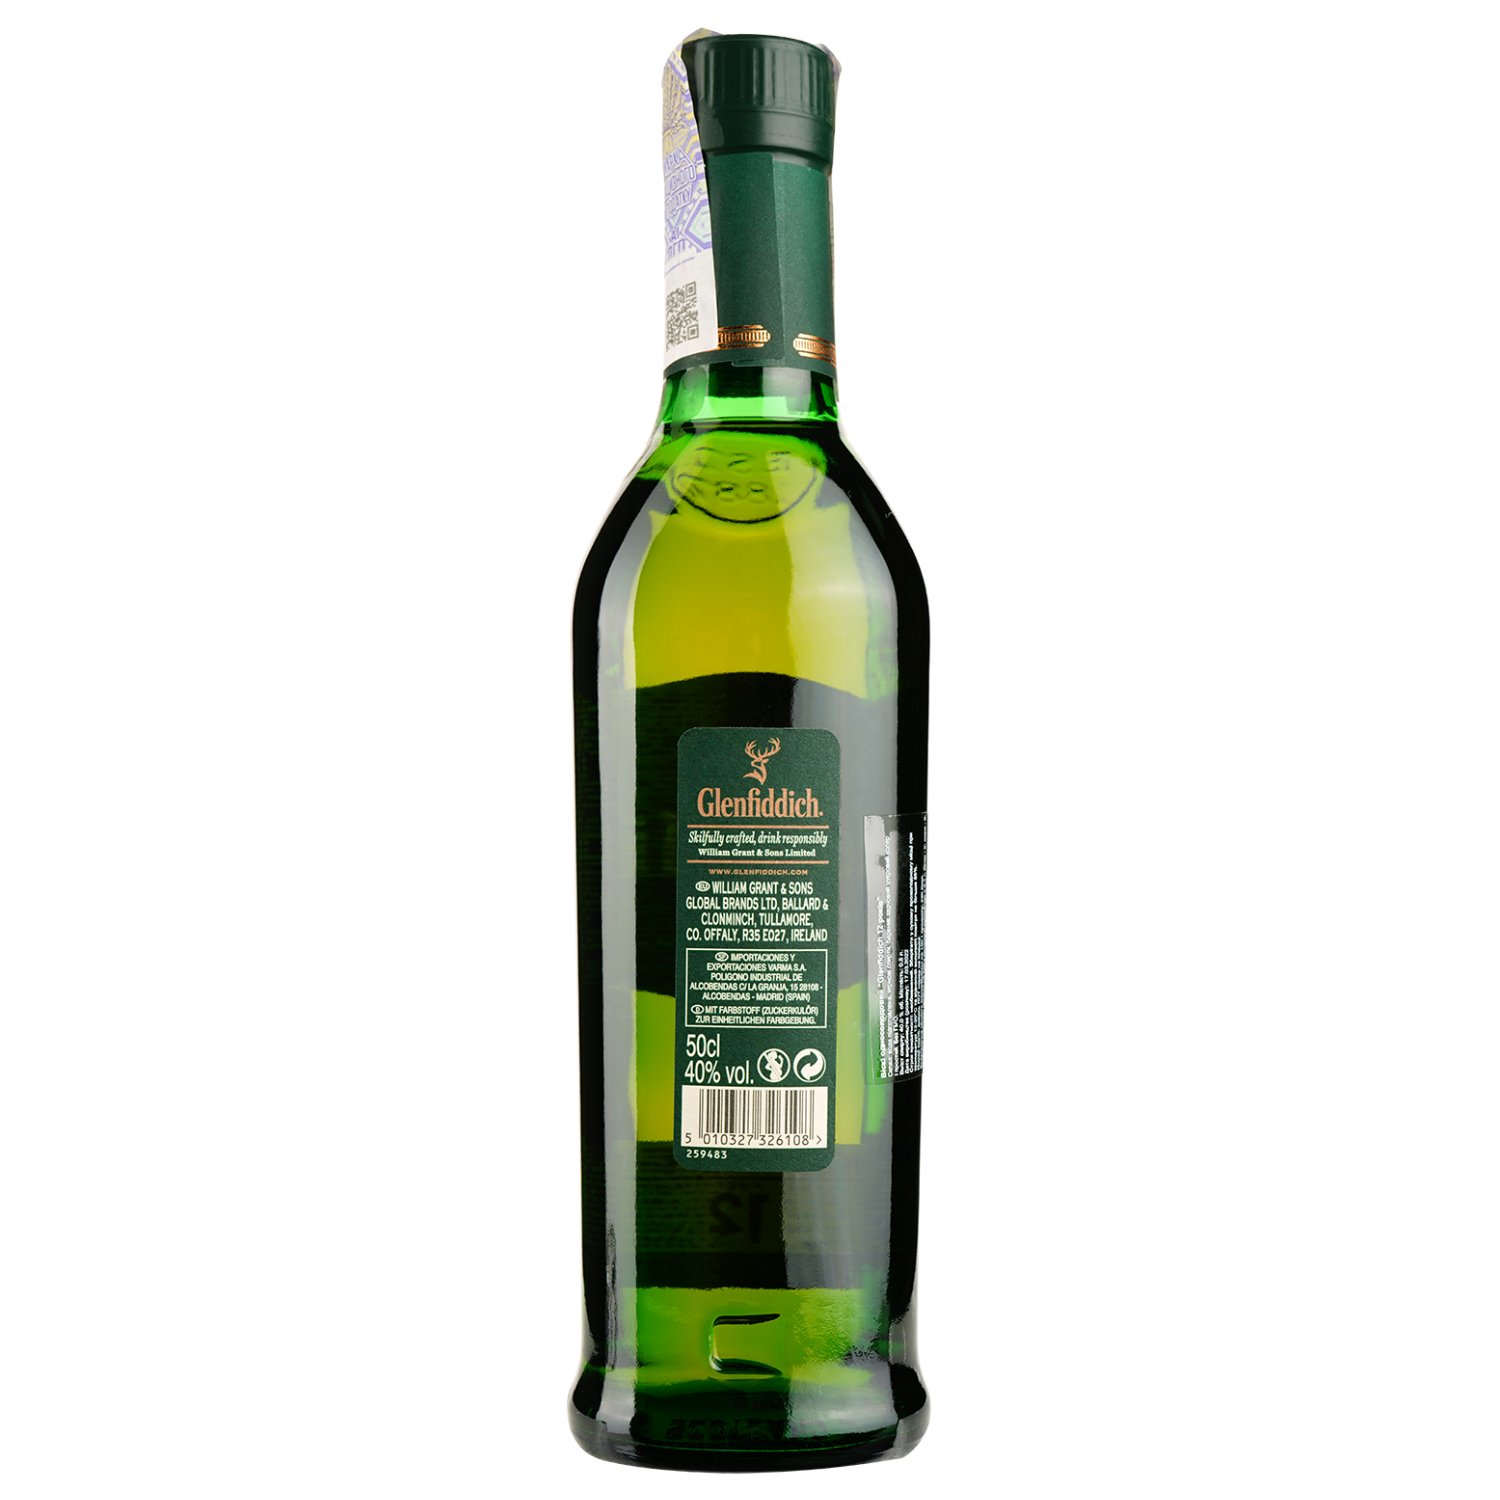 Віскі Glenfiddich Single Malt Scotch, 12 yo, в подарунковій упаковці, 40%, 0,5 л (91149) - фото 2